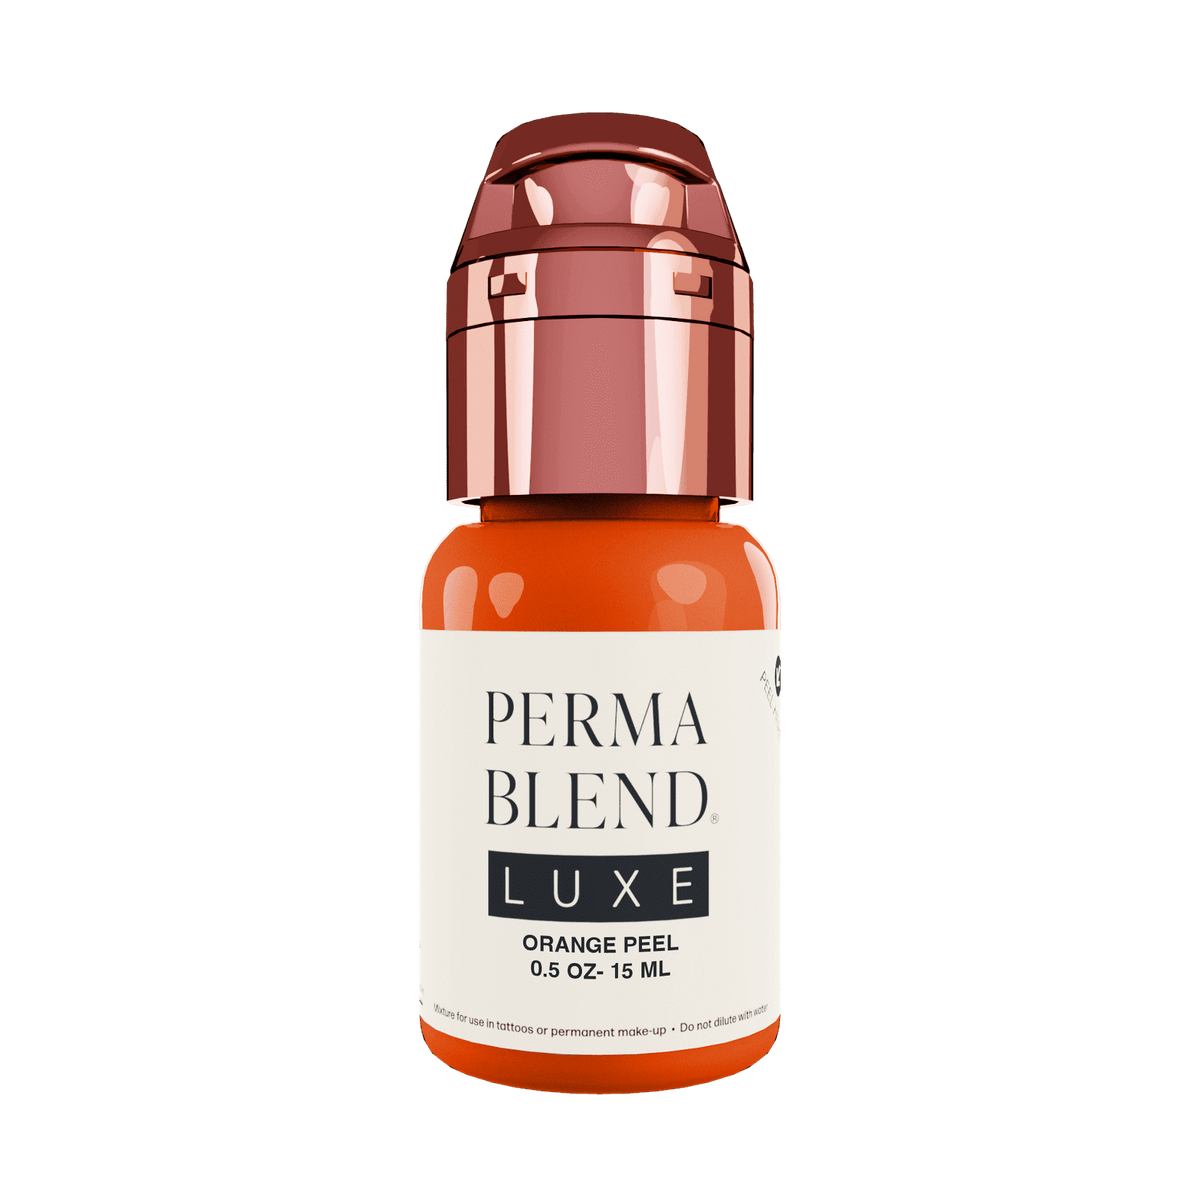 Perma Blend Luxe Orange Peel